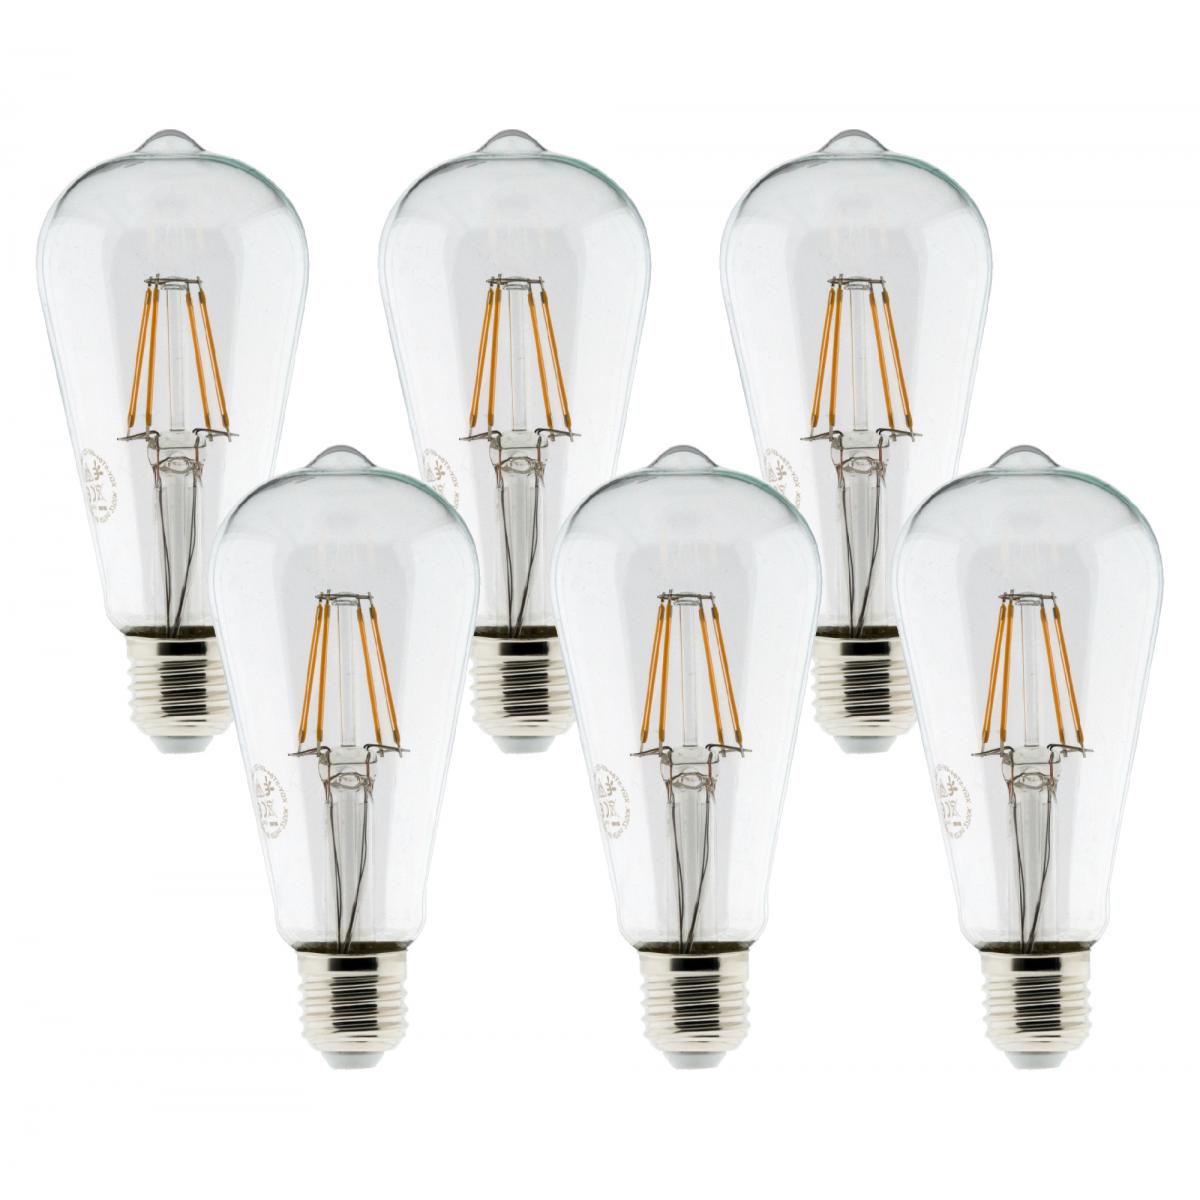 Elexity - Pack de 6 ampoules LED Déco filament 4W E27 Edison - Ampoules LED